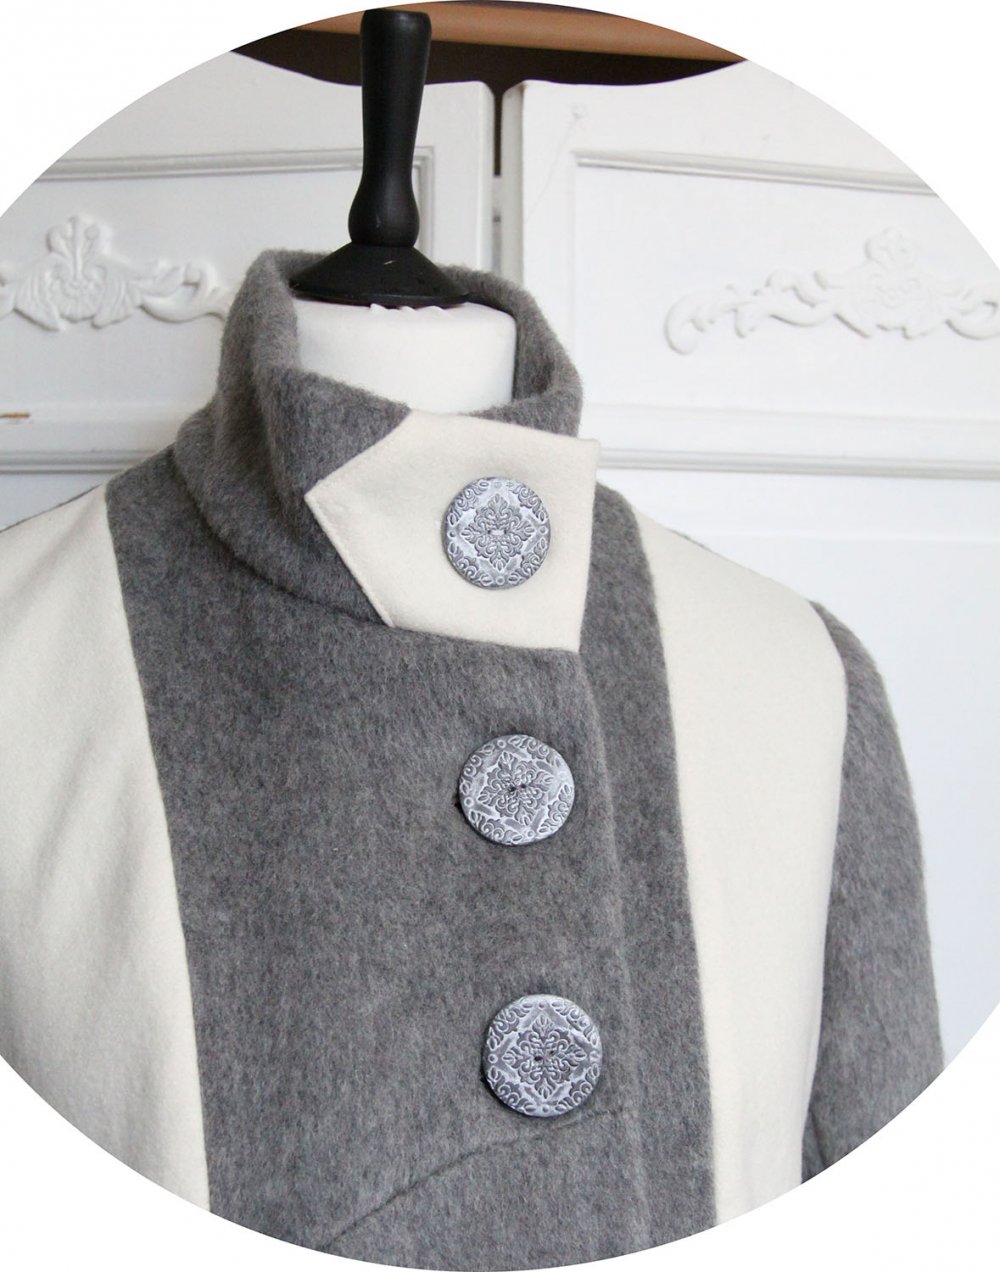 Manteau Spencer de forme trapèze en velours de laine et mohair gris perle et motif loup--9996030045238